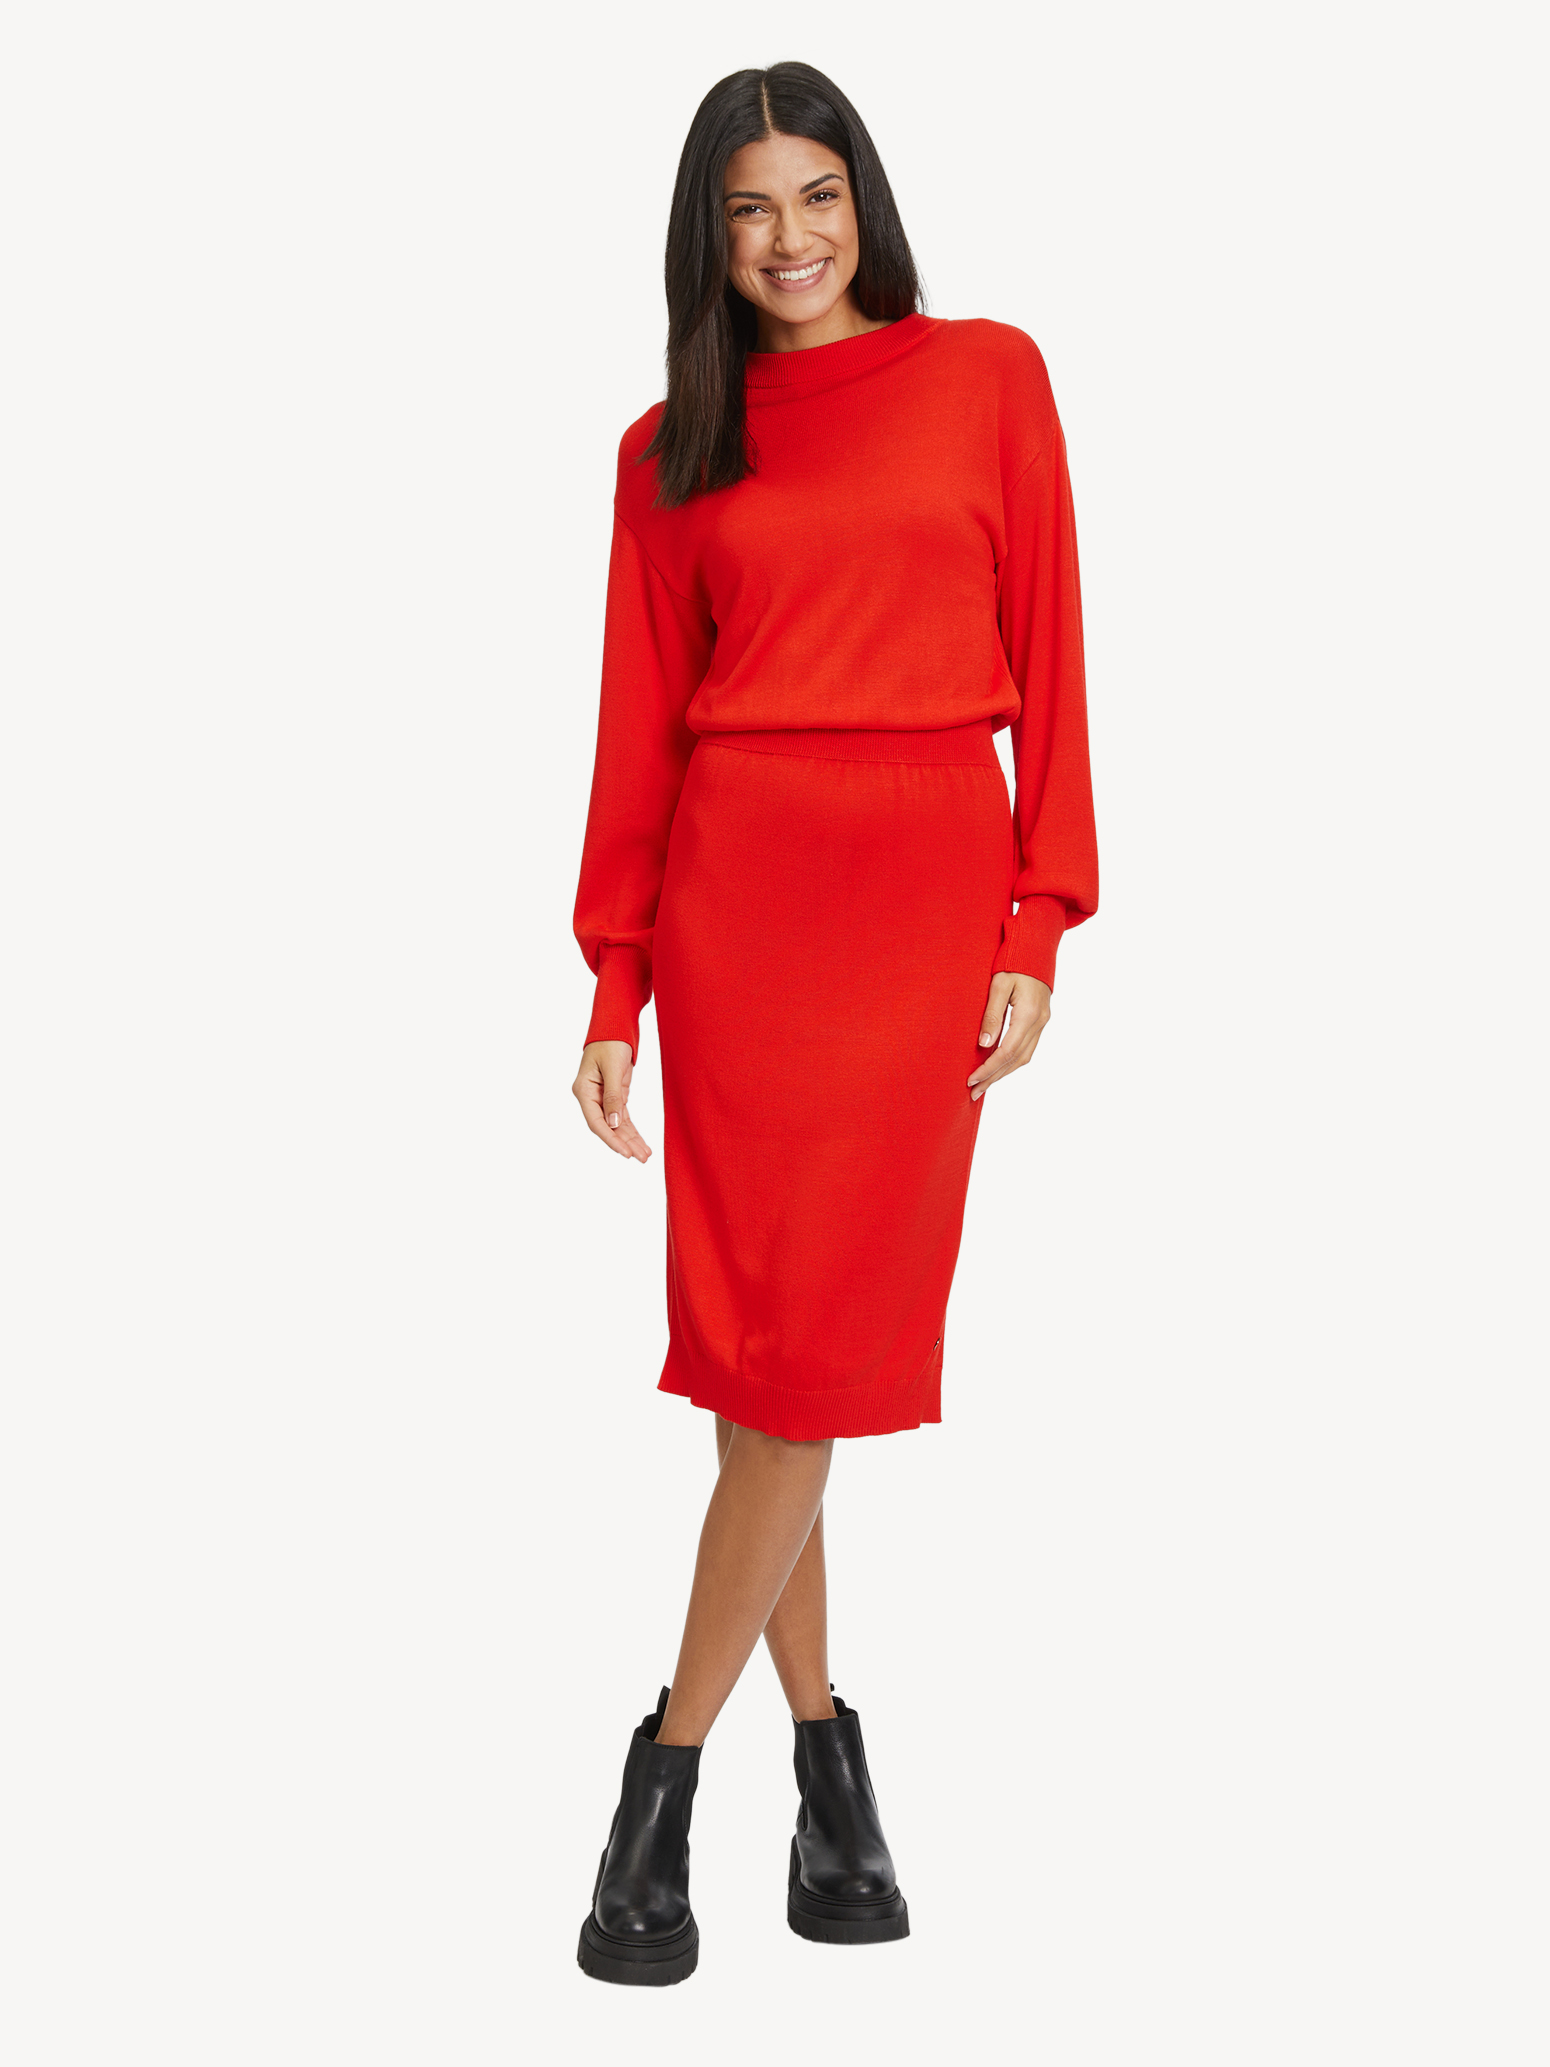 kaufen! Tamaris online & - Röcke Kleid rot TAW0329-30042: Kleider